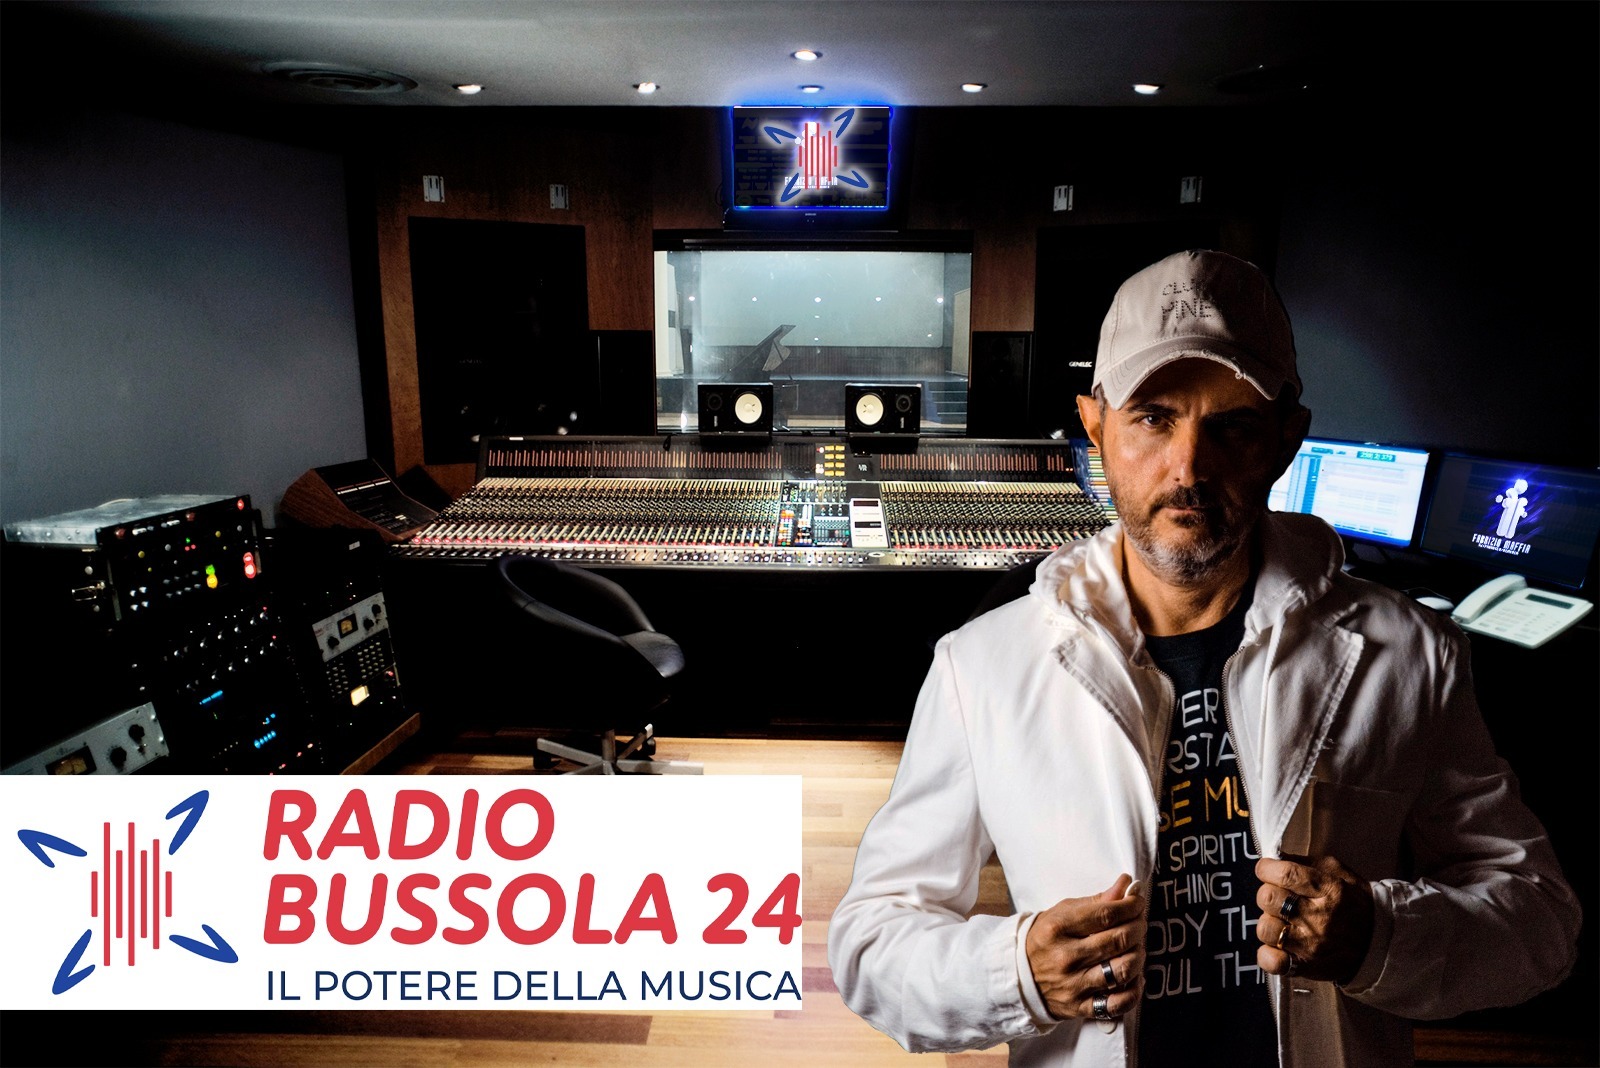 Salerno: Radio Bussola 24 nella giuria delle Radio del Festival di Sanremo